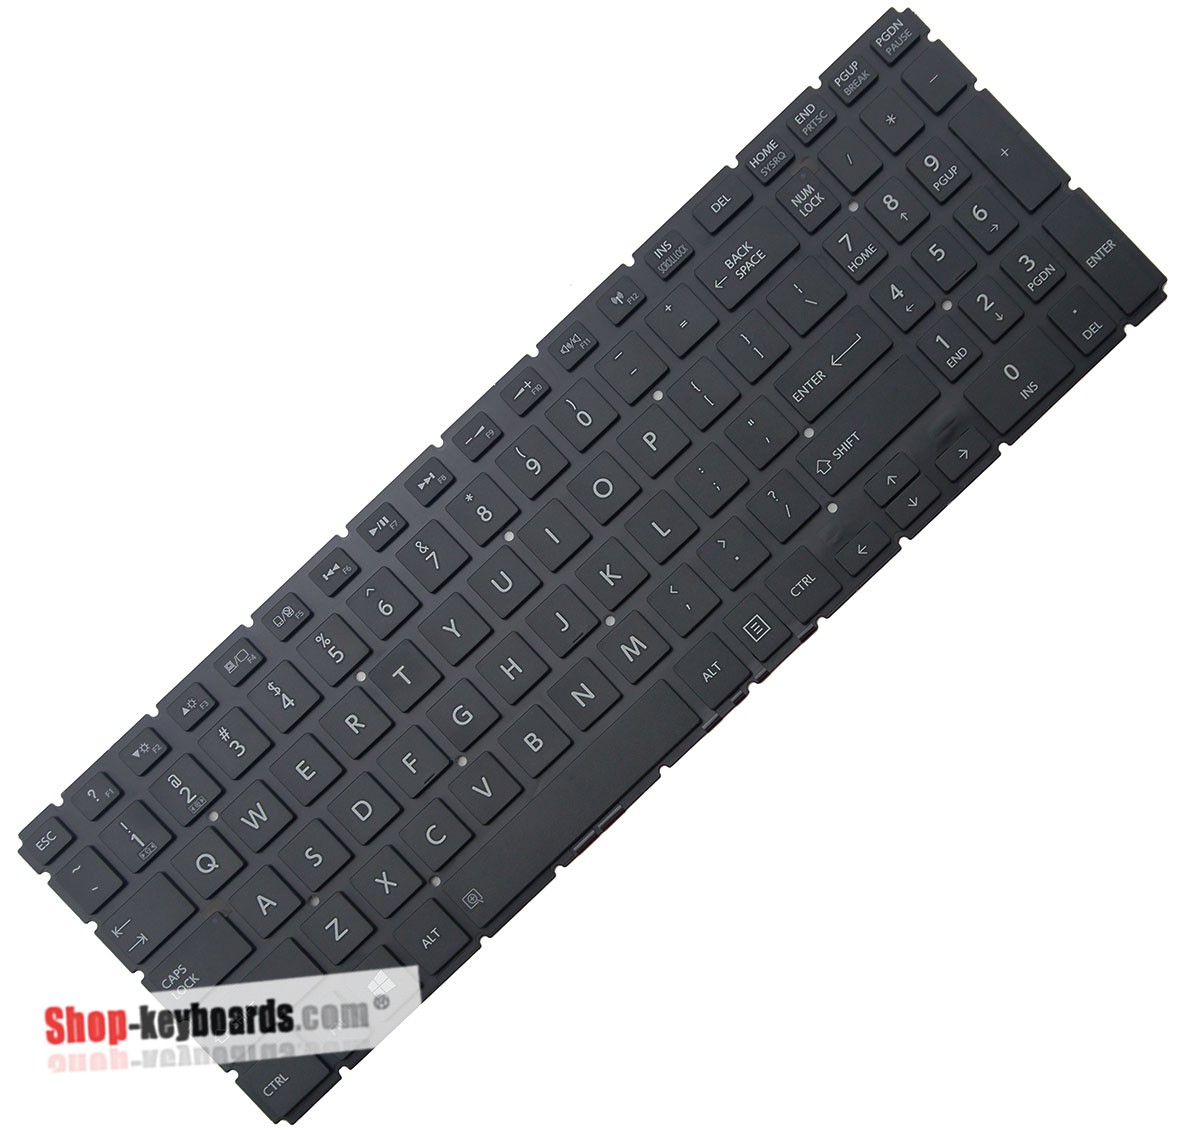 Toshiba SATELLITE C55-C Keyboard replacement